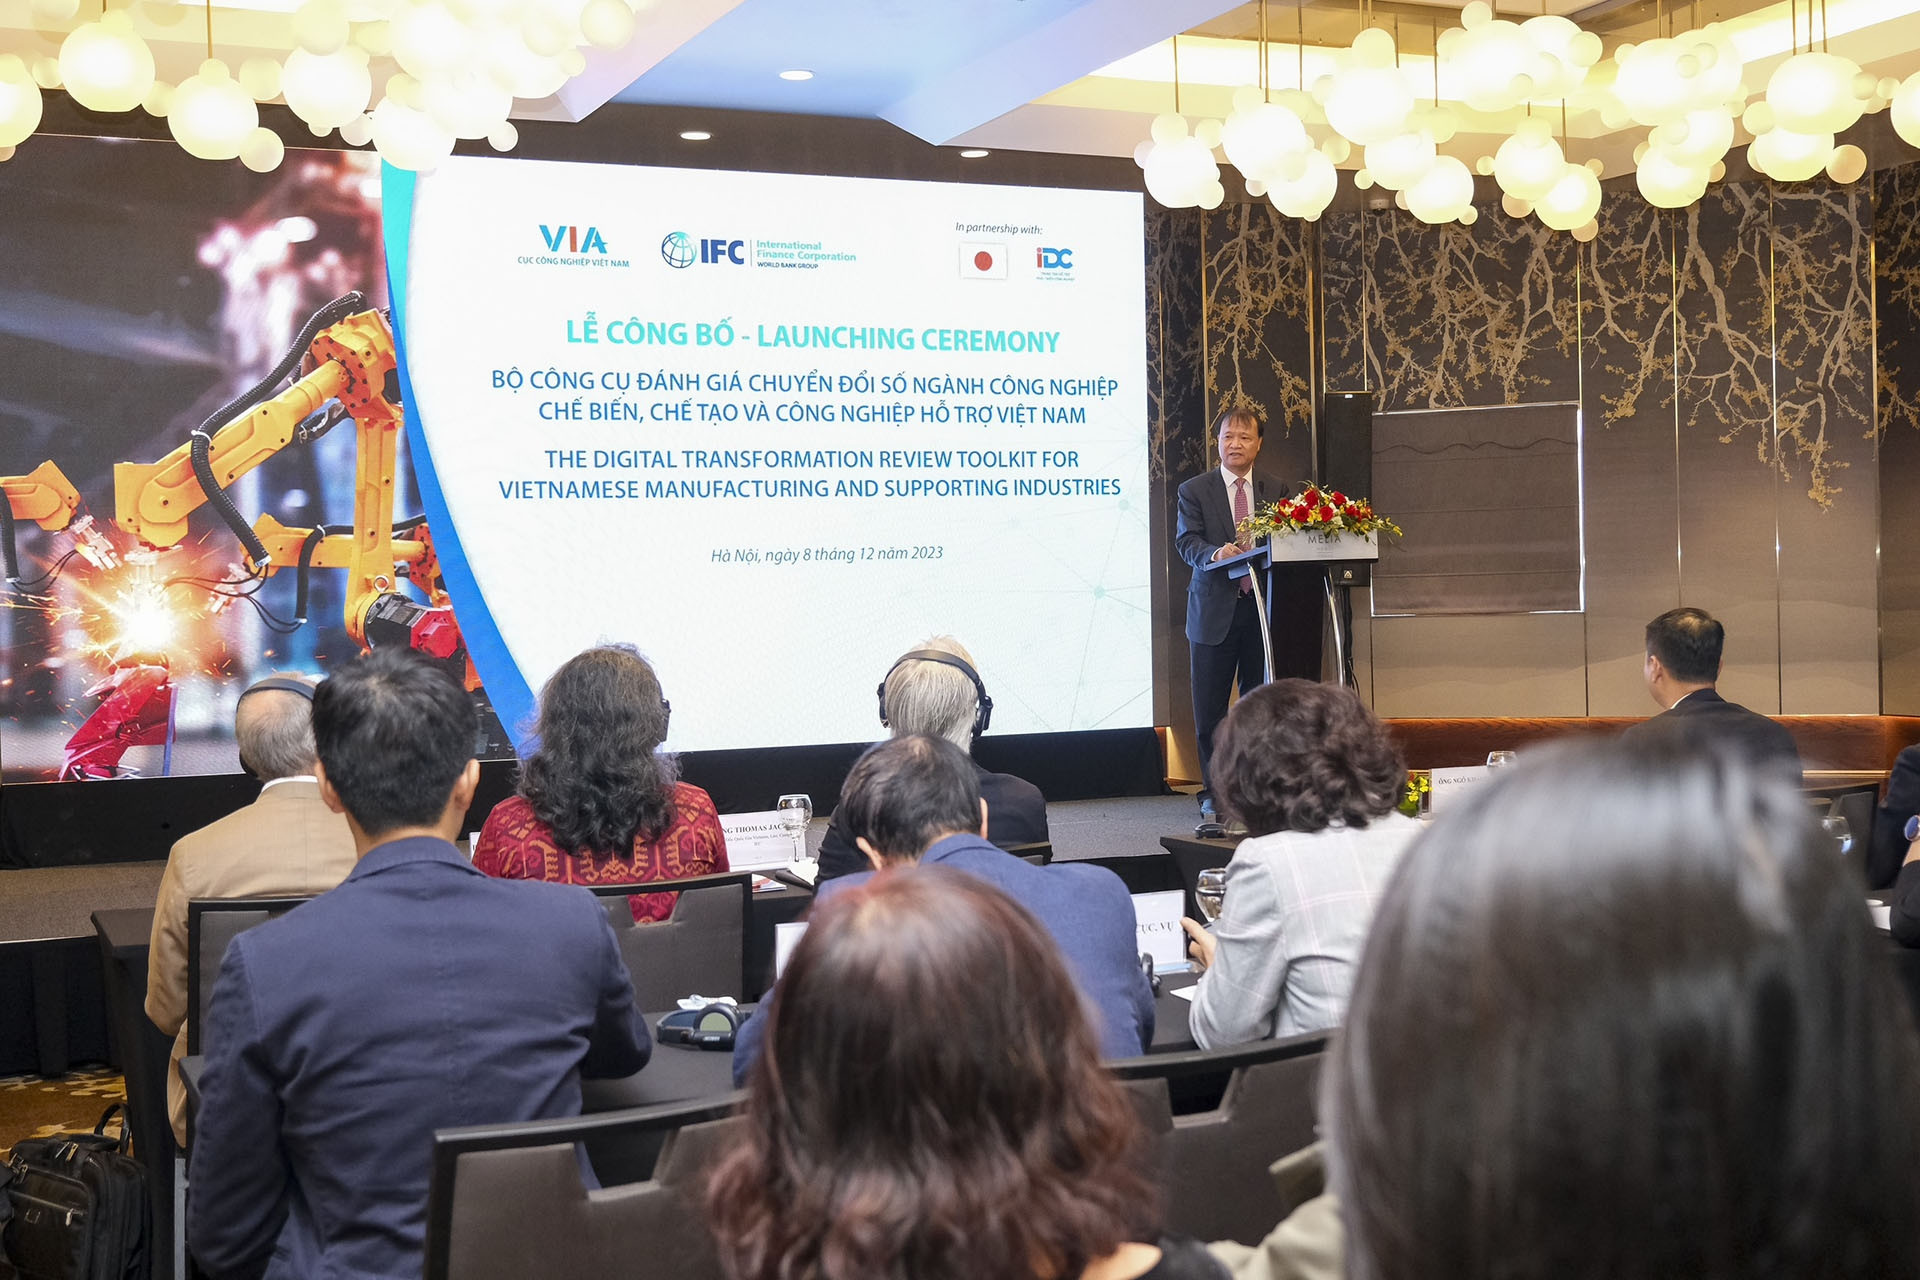 Ra mắt Bộ công cụ Đánh giá Chuyển đổi số ngành công nghiệp hỗ trợ Việt Nam